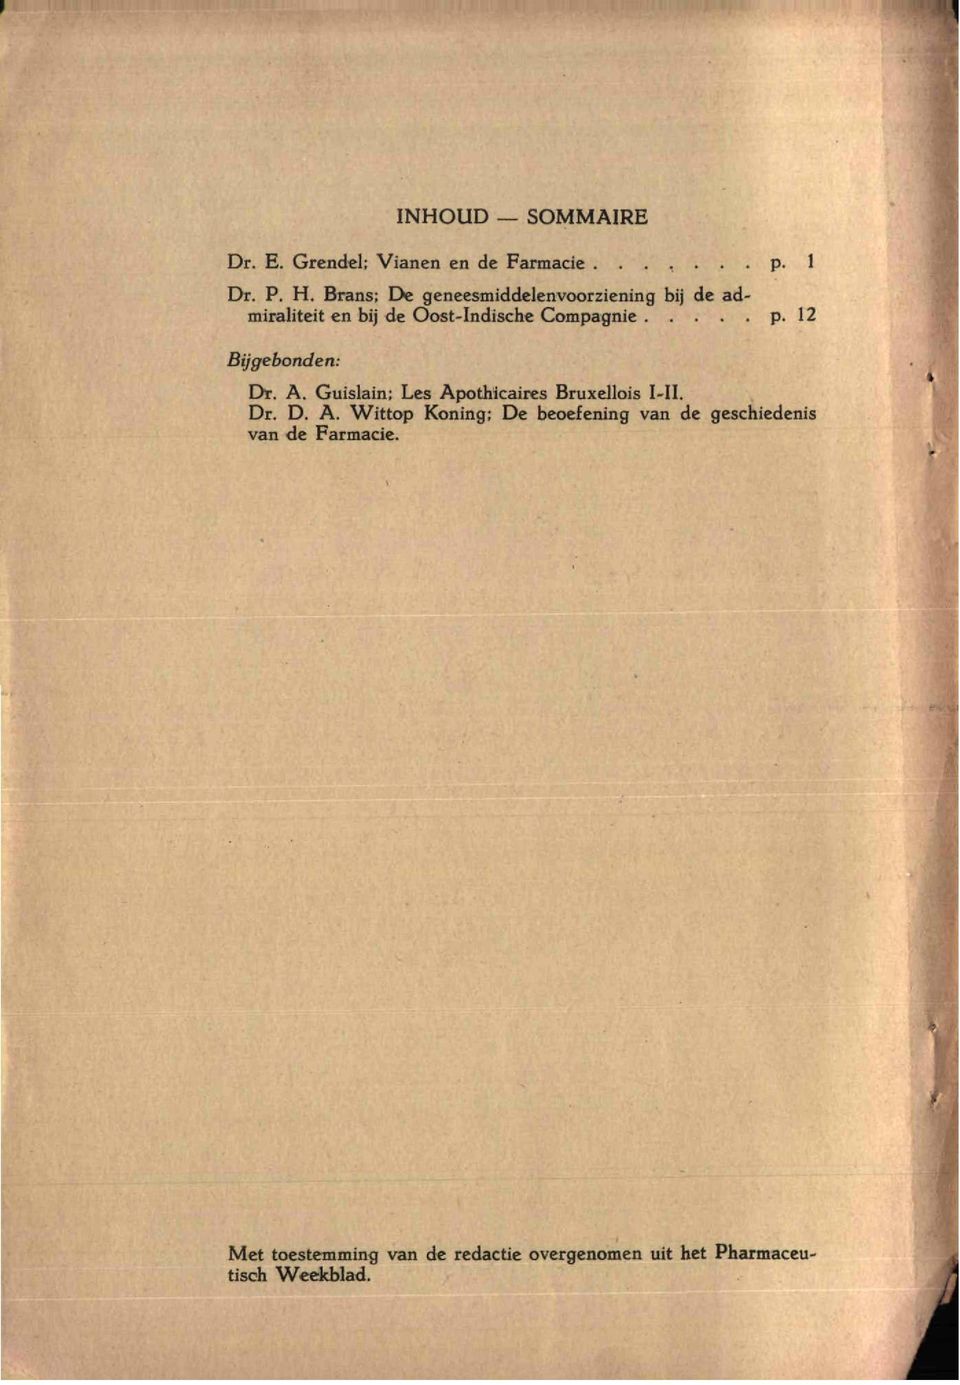 12 Bijgebonden: Dr. A. Guislain; Les Apothicaires Bruxellois I-II. Dr. D. A. Wittop Koning; De beoefening van de geschiedenis van de Farmacie.